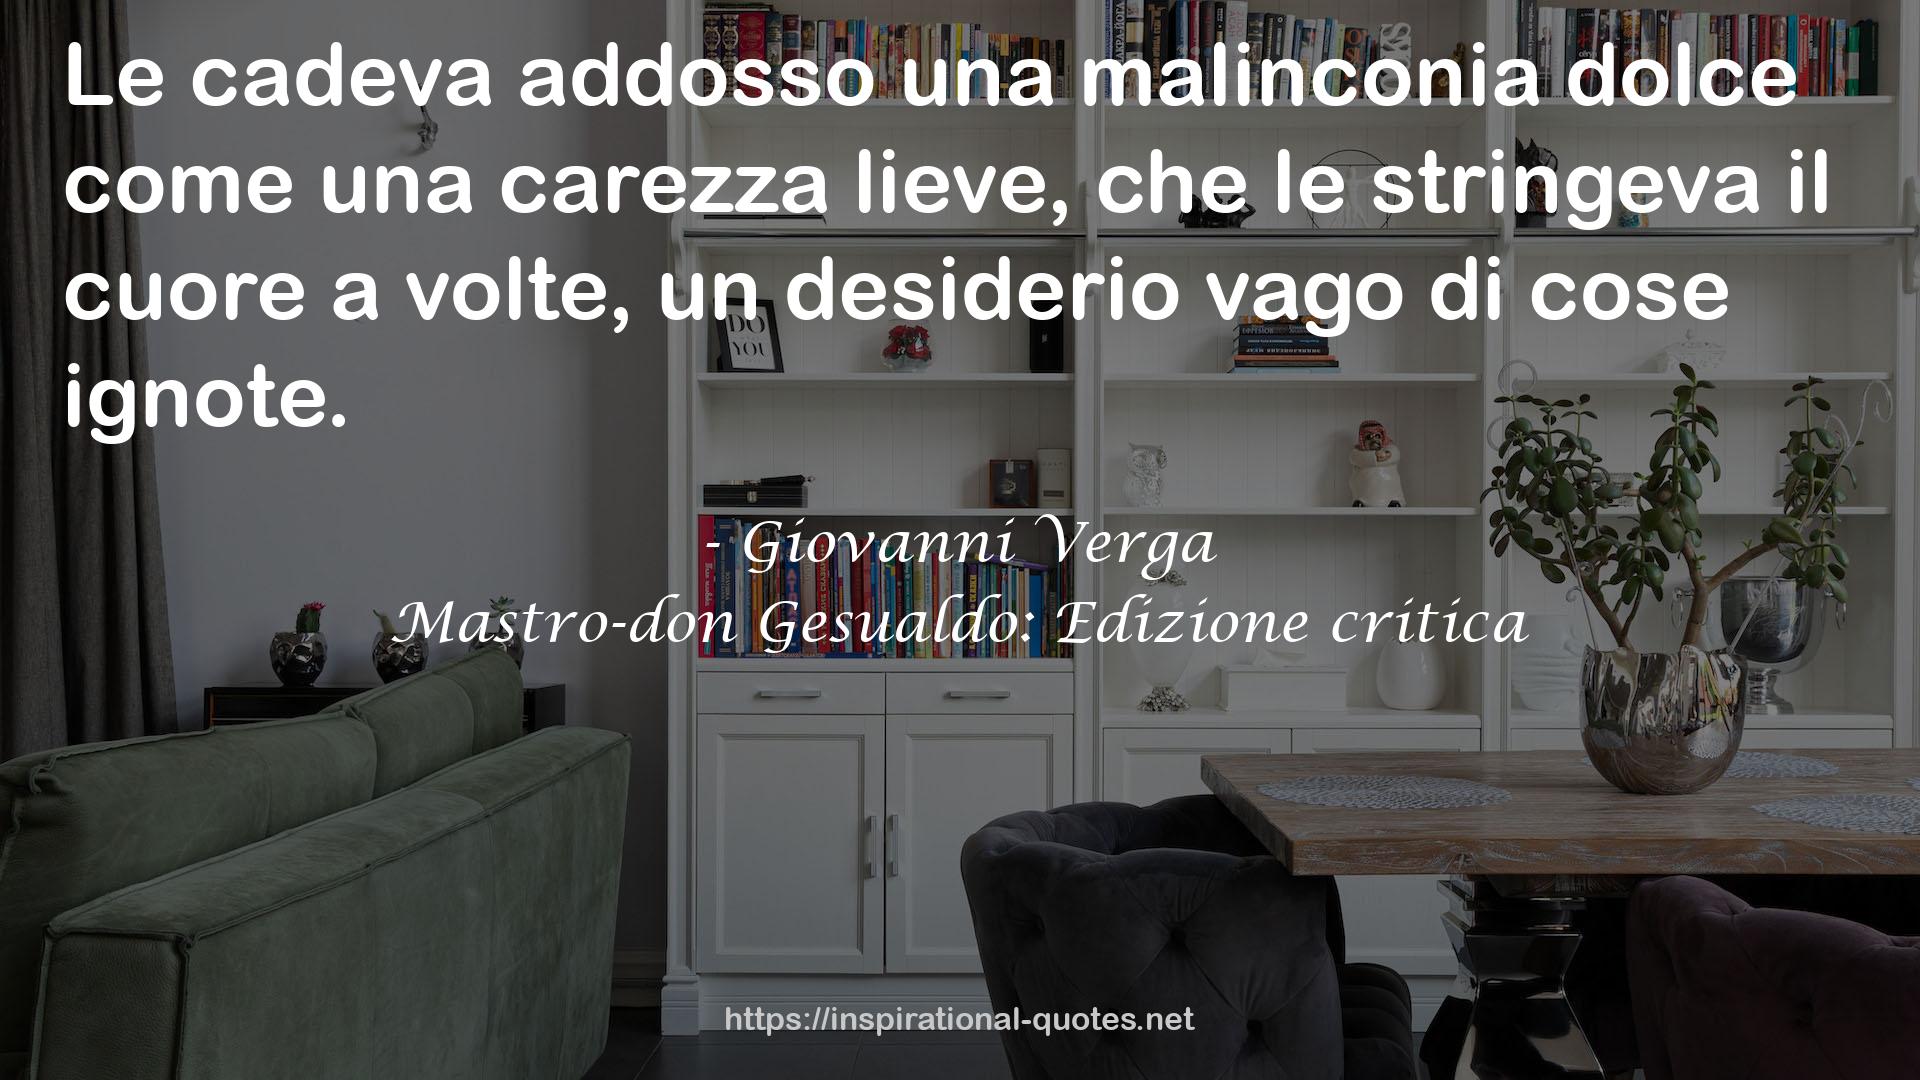 Mastro-don Gesualdo: Edizione critica QUOTES